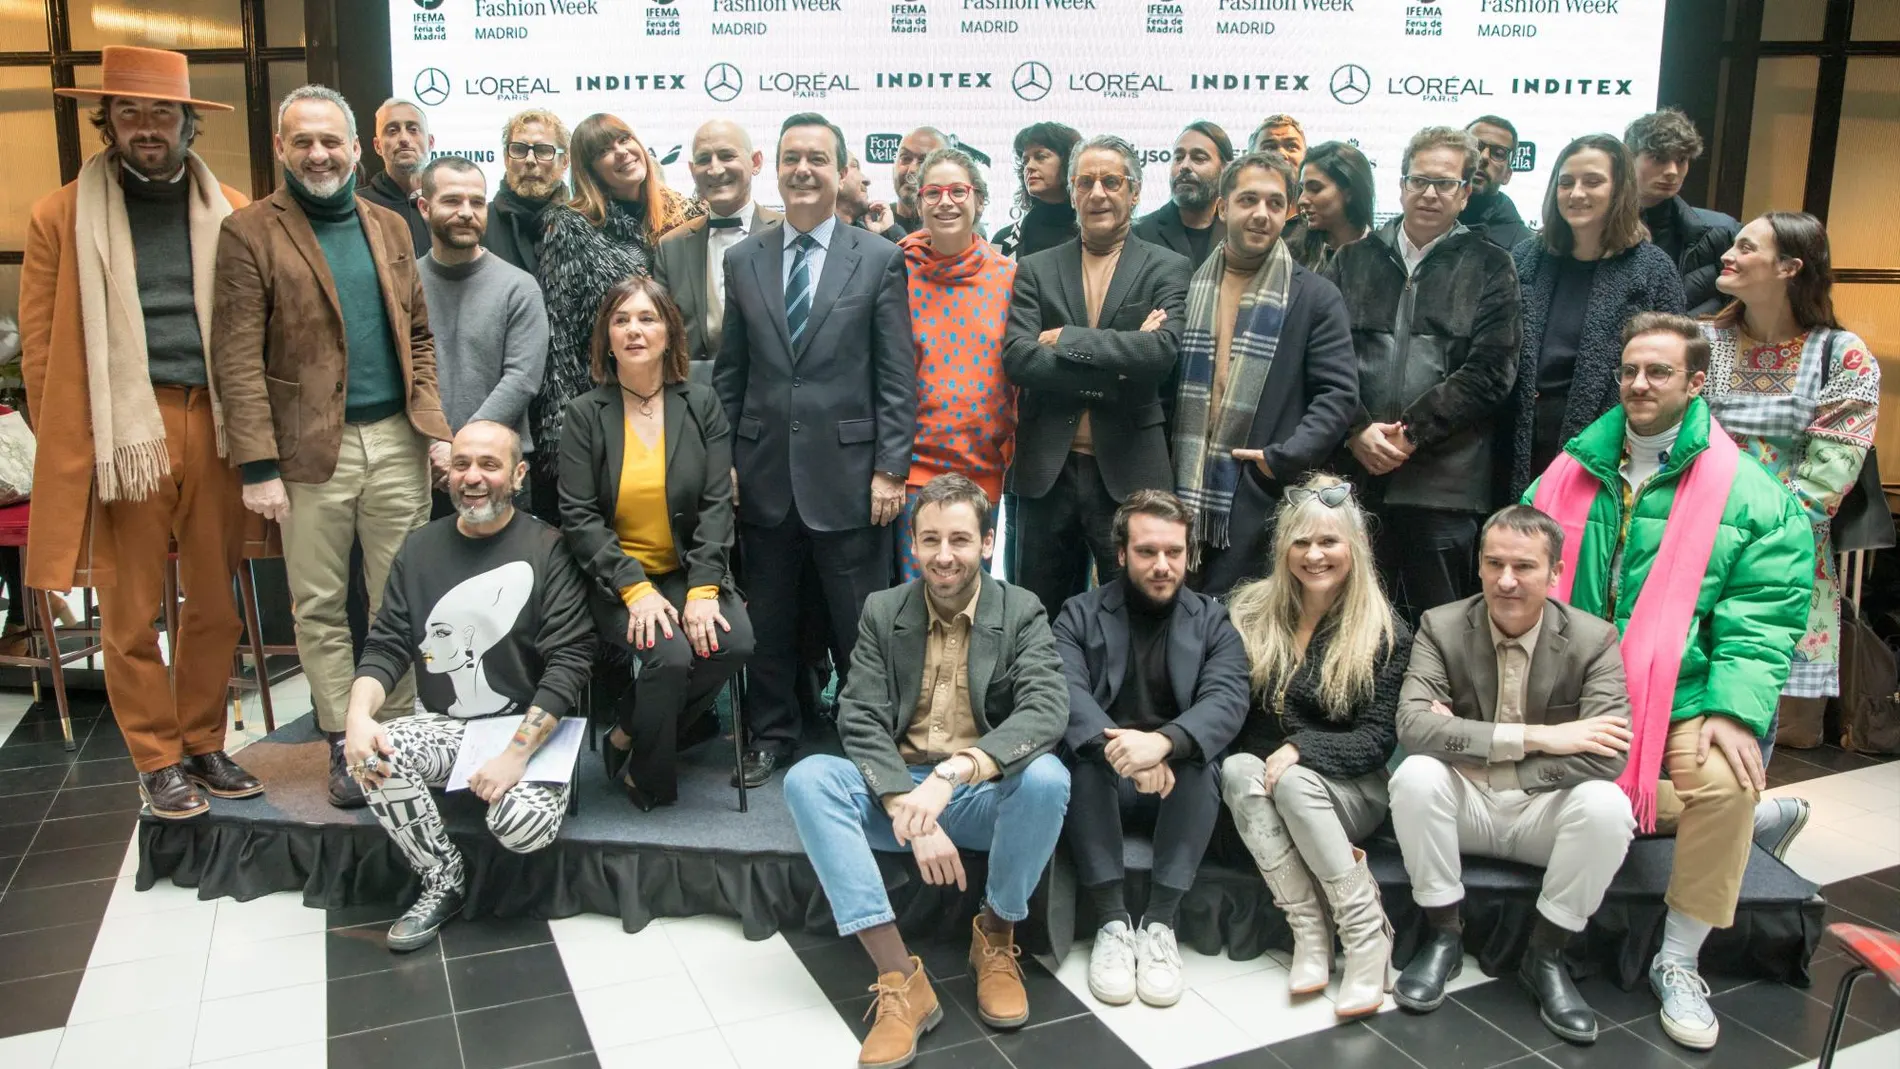 Foto de familia de algunos diseñadores participantes en la pasarela de Mercedes Benz Fashion Week Madrid junto con Eduardo López Puerta, director general de Ifema, y Charo Izquierdo, directora de Mercedes-Benz Fashion Week Madrid / Foto: Luis Díaz